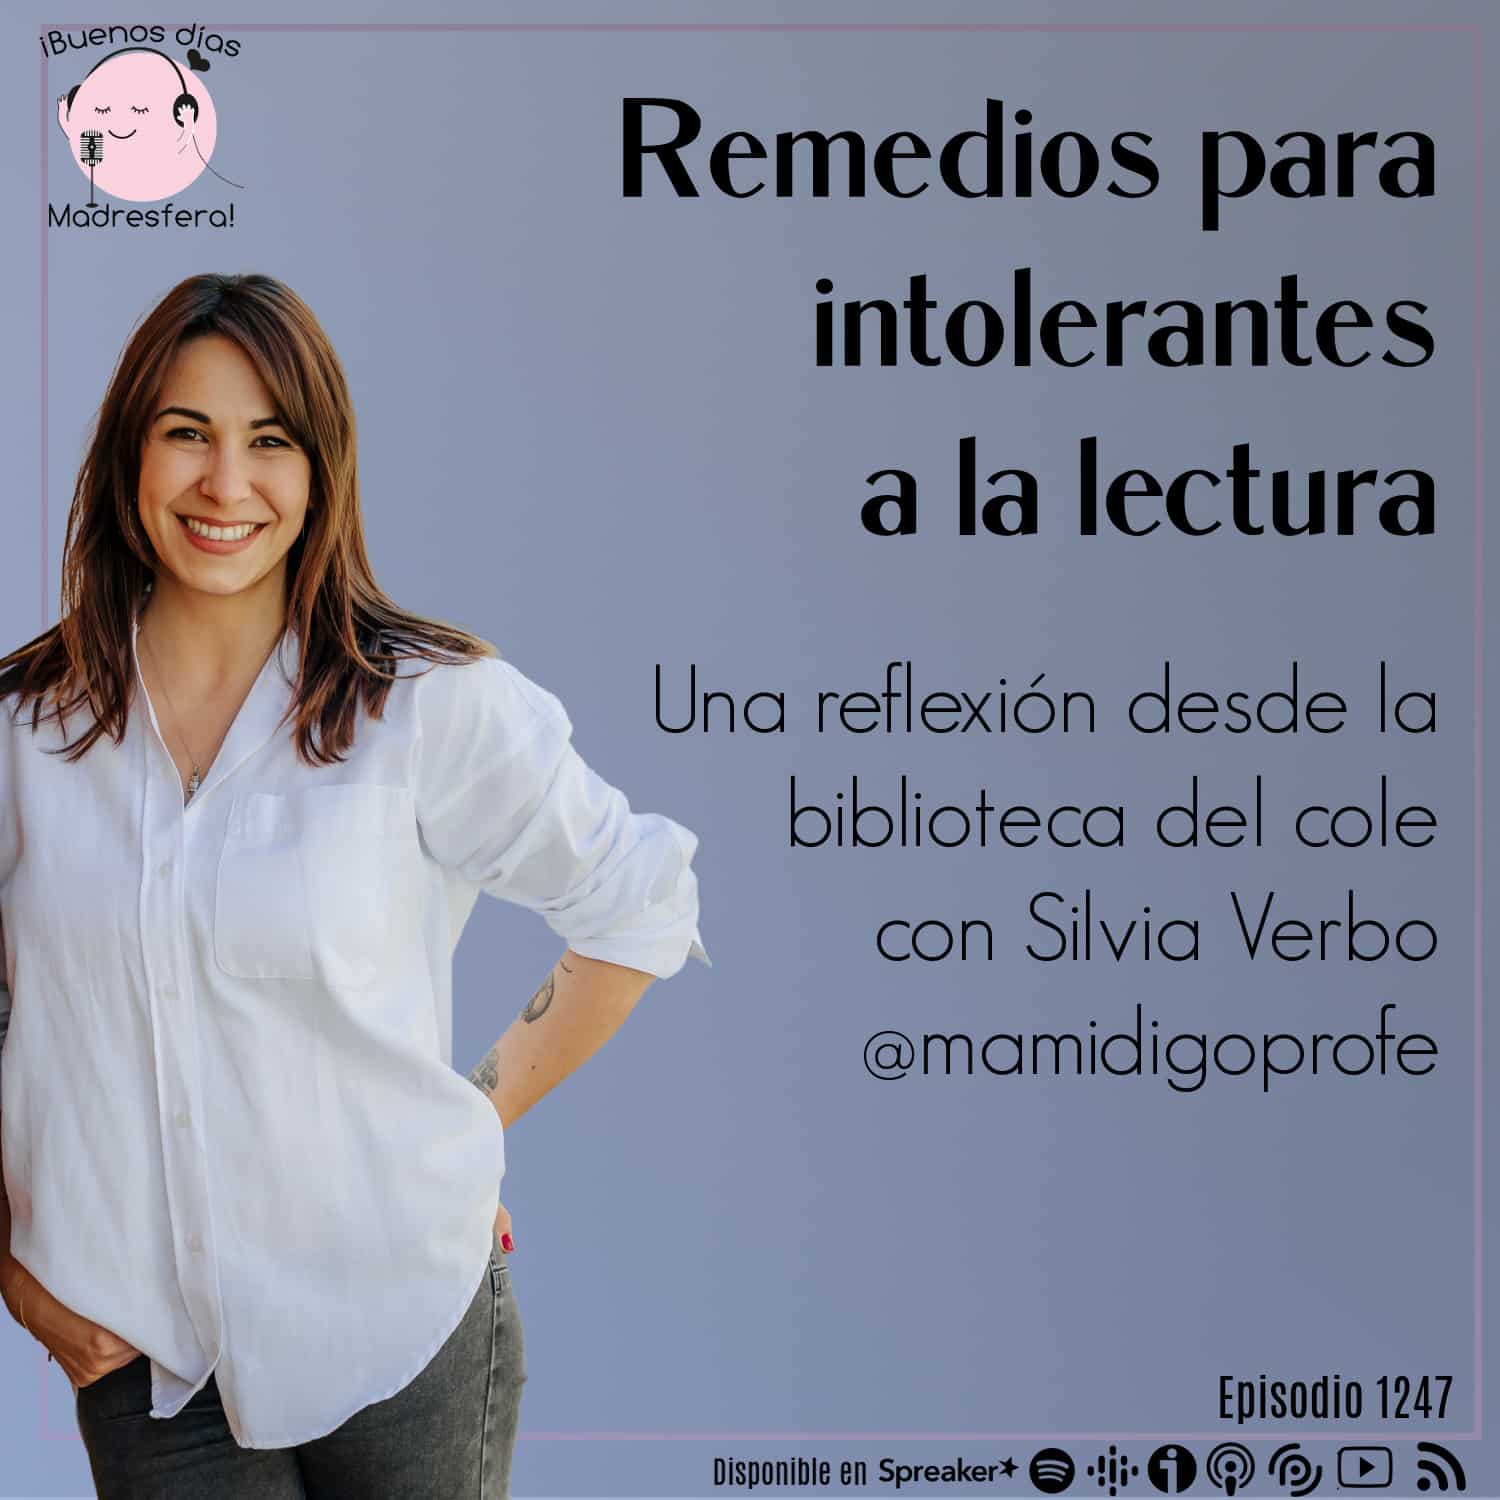 Remedios para intolerantes a la lectura: Una reflexión desde la biblioteca del cole con Silvia Verbo @mamidigoprofe